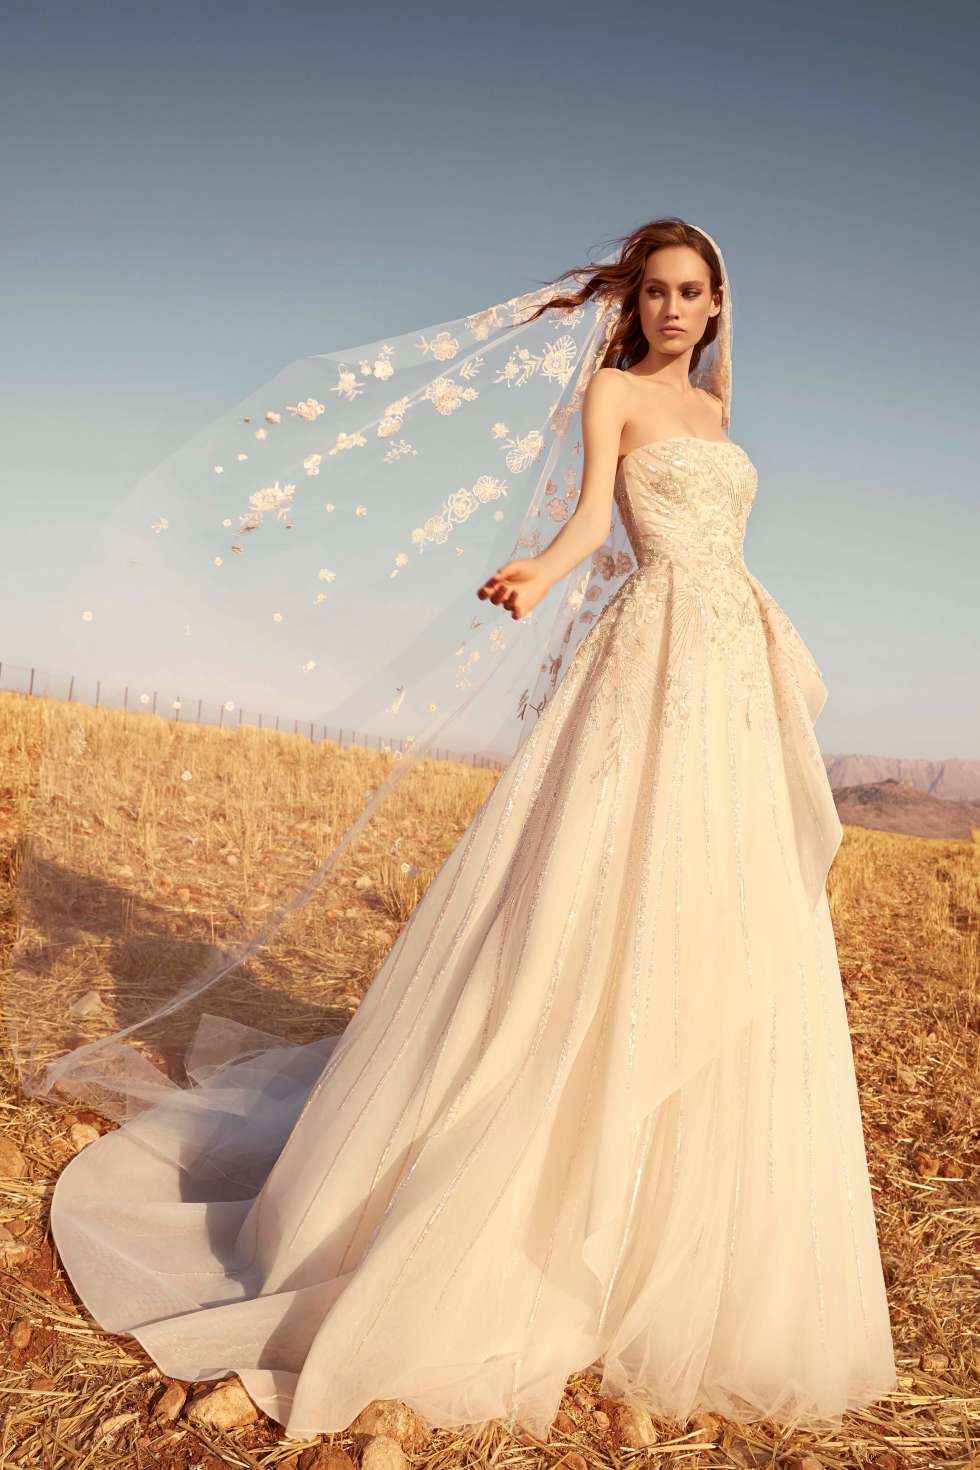 مجموعة زهير مراد لفساتين الزفاف لخريف عام 2020